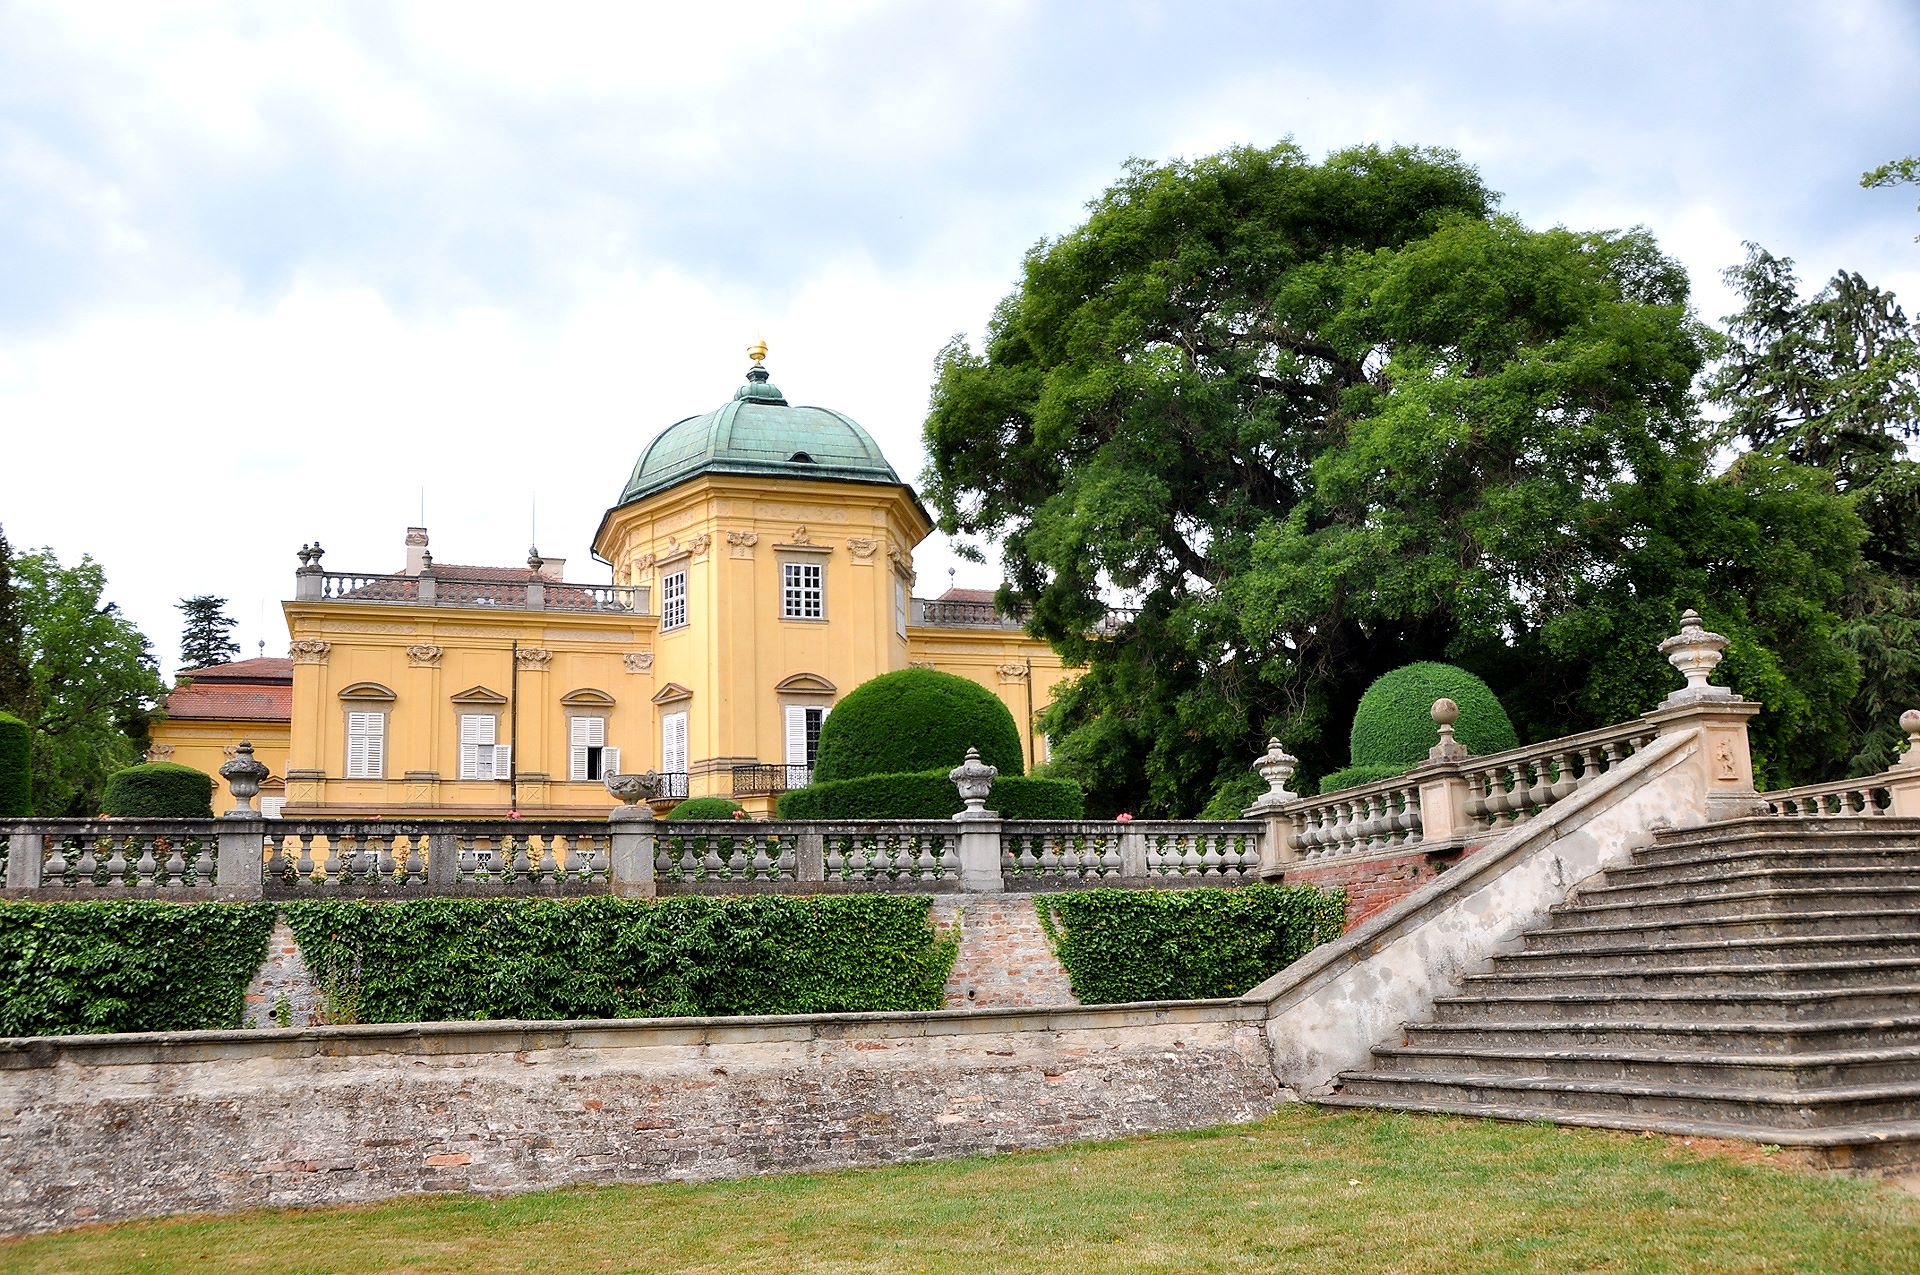 Gartenseite des Schlosses Buchlovice